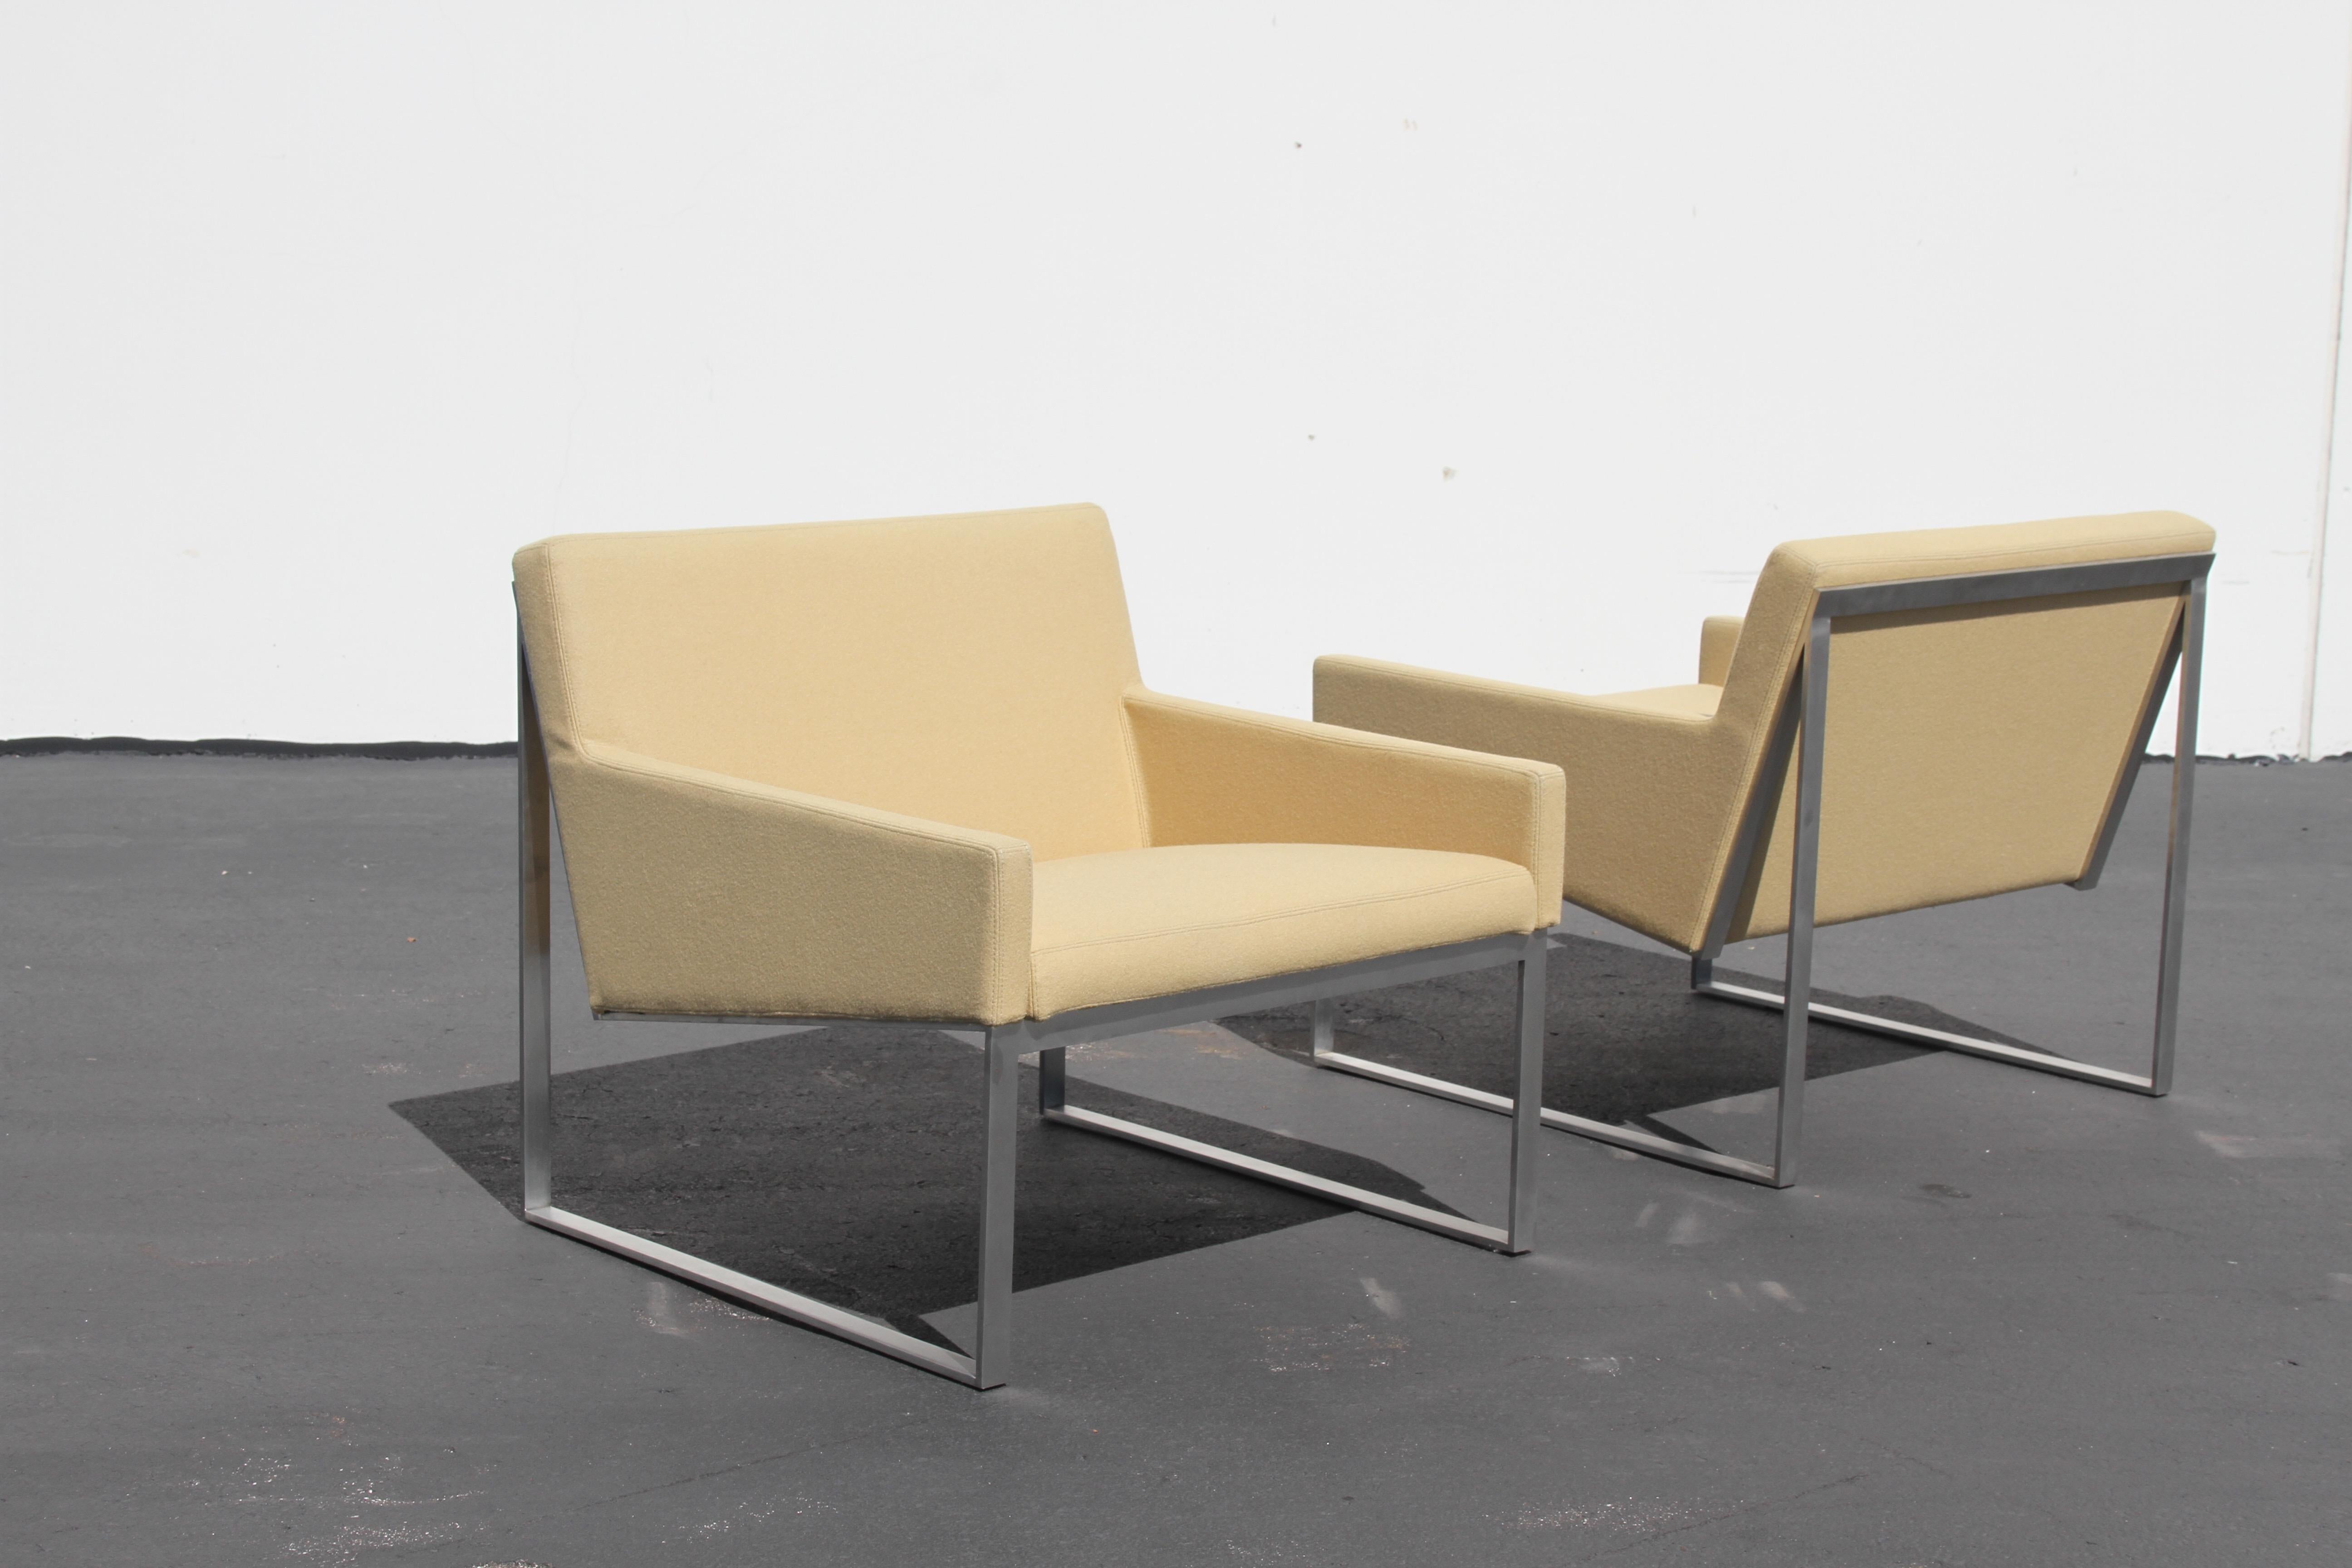 Fabien Baron, né à Paris, a conçu les chaises longues b.3 pour Bernhardt Design. Cadres en nickel brossé, avec revêtement en fibre mélangée comme la laine. Légèrement utilisé, production 2015. La simplicité à son meilleur, un design très bien